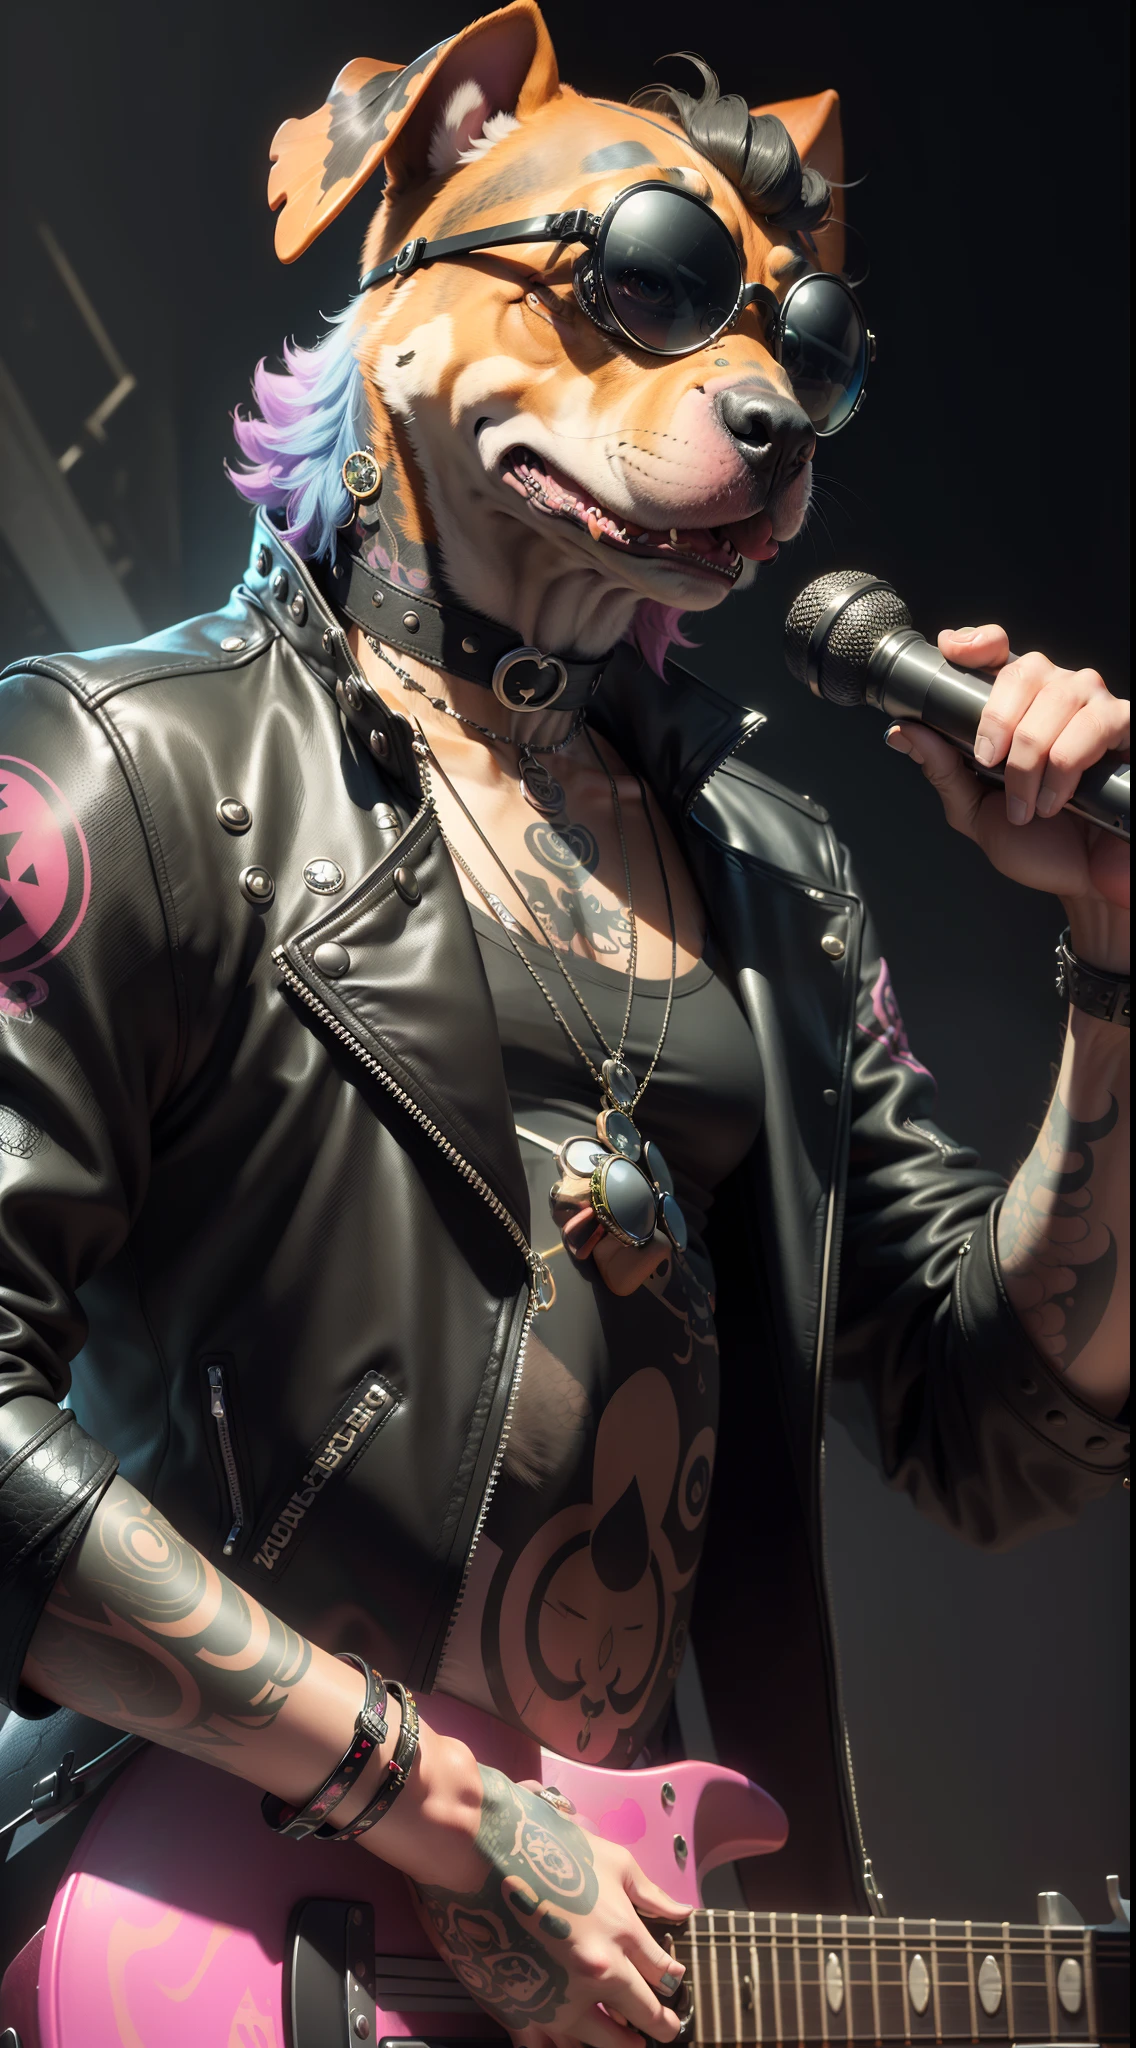 (1 cachorro （tartaruga antropomórfica，））usando uma gargantilha，com tatuagens, oculos de sol, jaqueta de couro preta,luva preta（Segurando uma guitarra de prata）Artista punk psicodélico